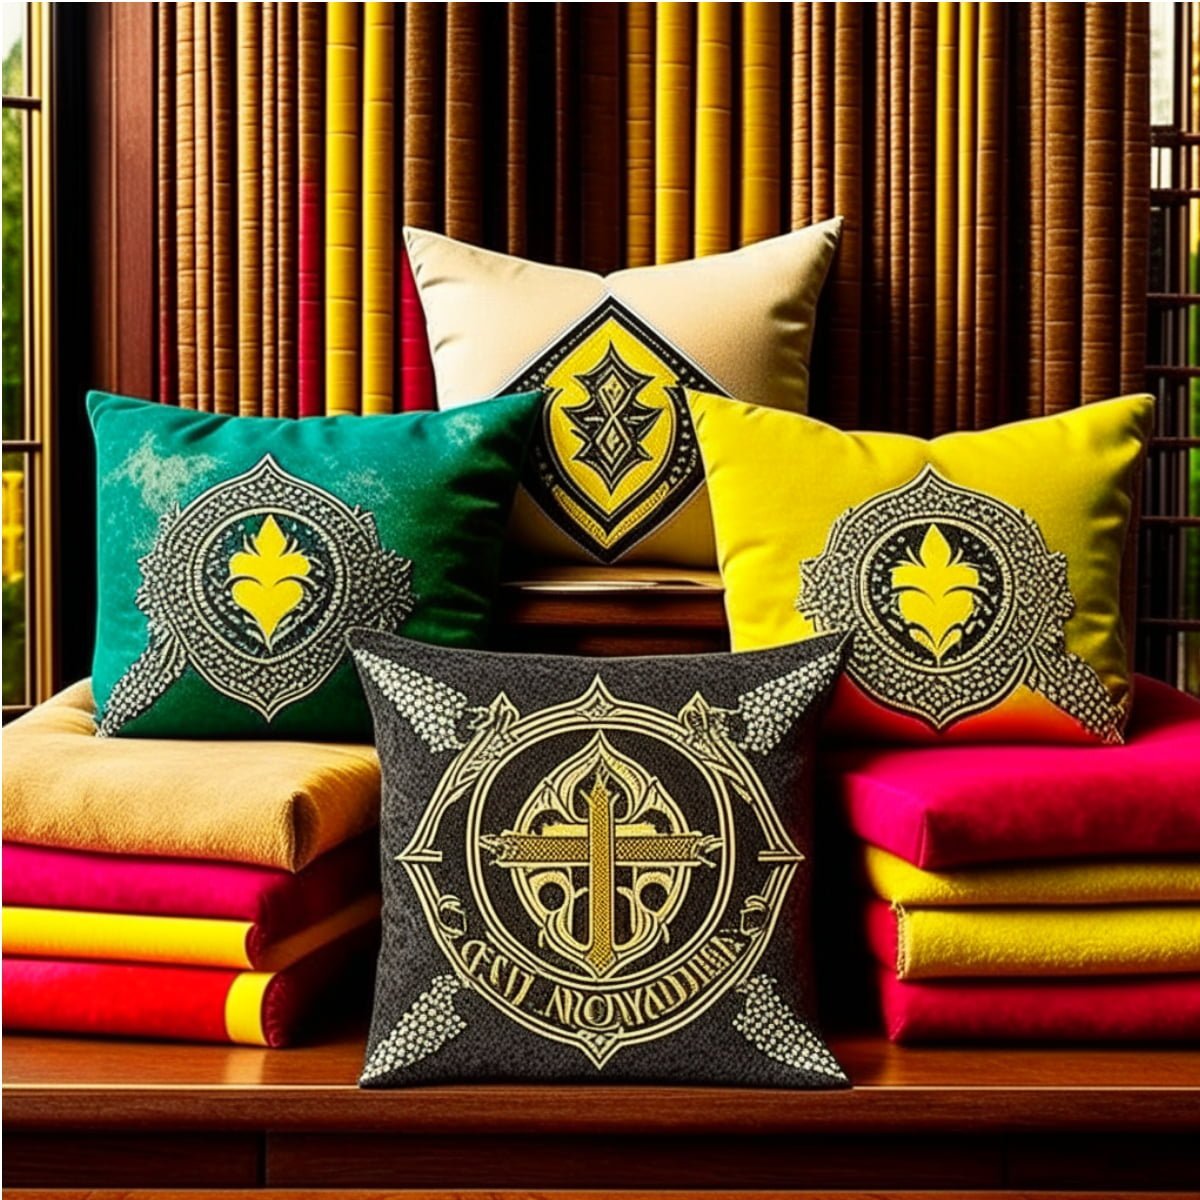 Hogwarts house pillows